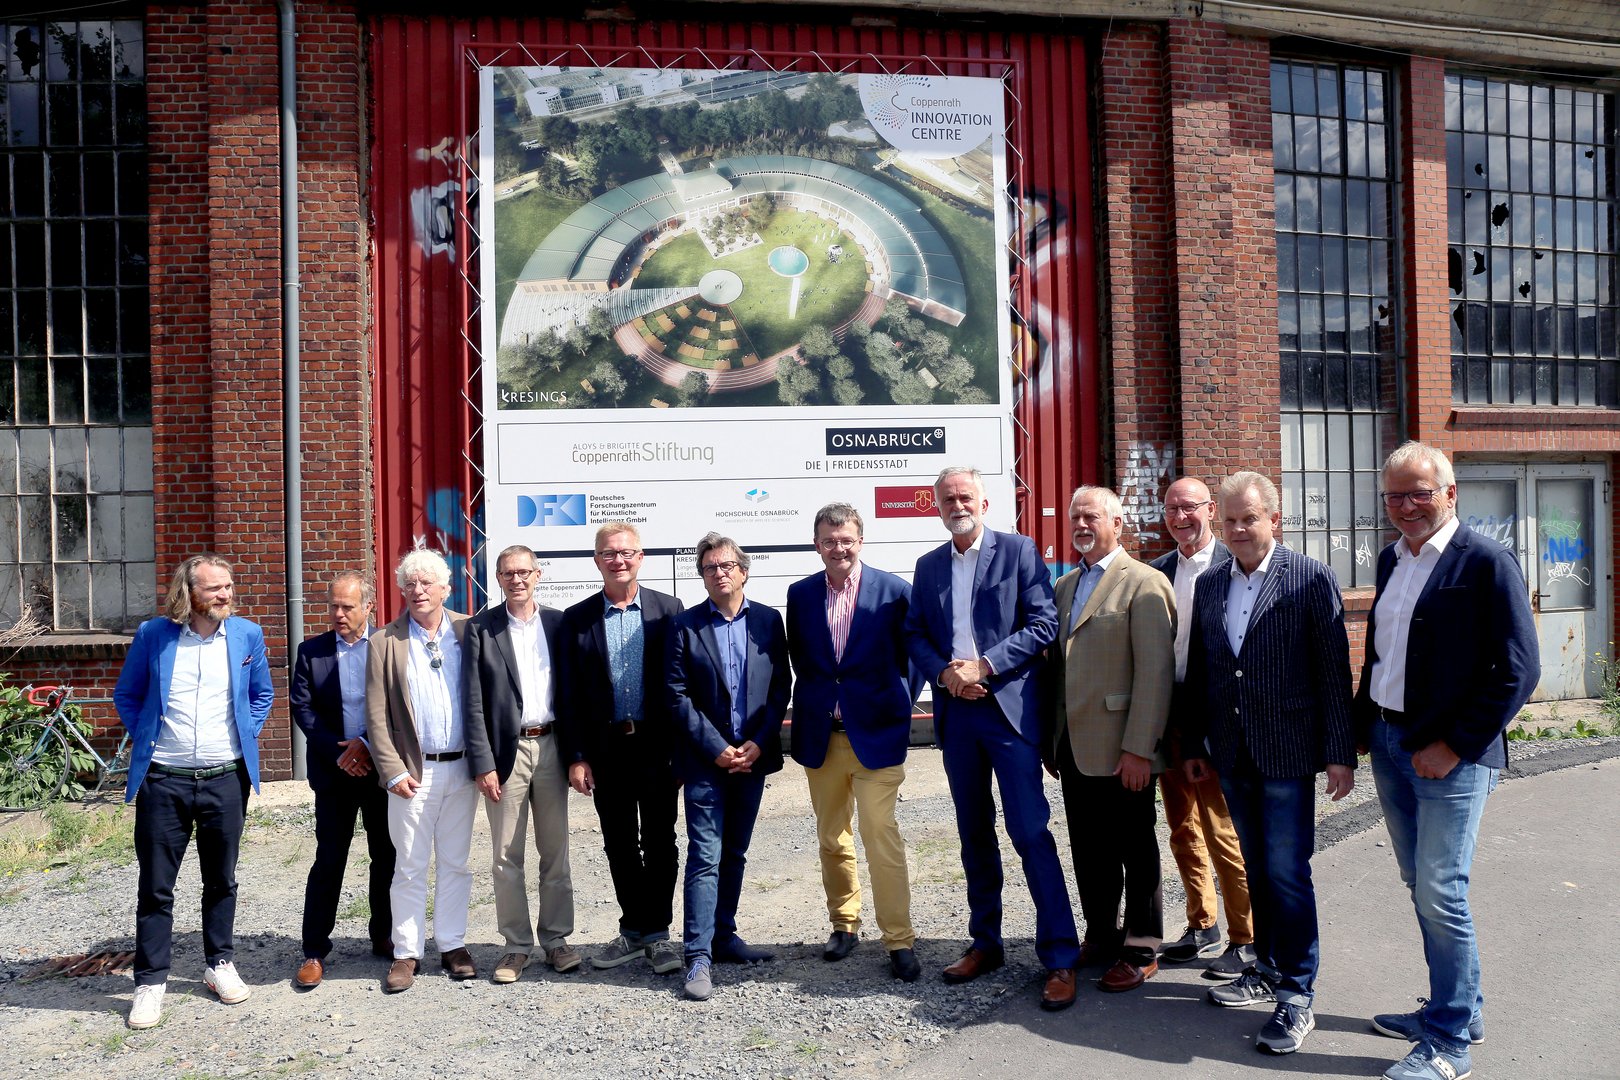 Vertreter von Stadt Osnabrück, der Aloys & Brigitte Coppenrath-Stiftung, von Universität und Hochschule Osnabrück stellen die Pläne für das "Coppenrath Innovation Centre" am alten Ringlokschuppen vor.